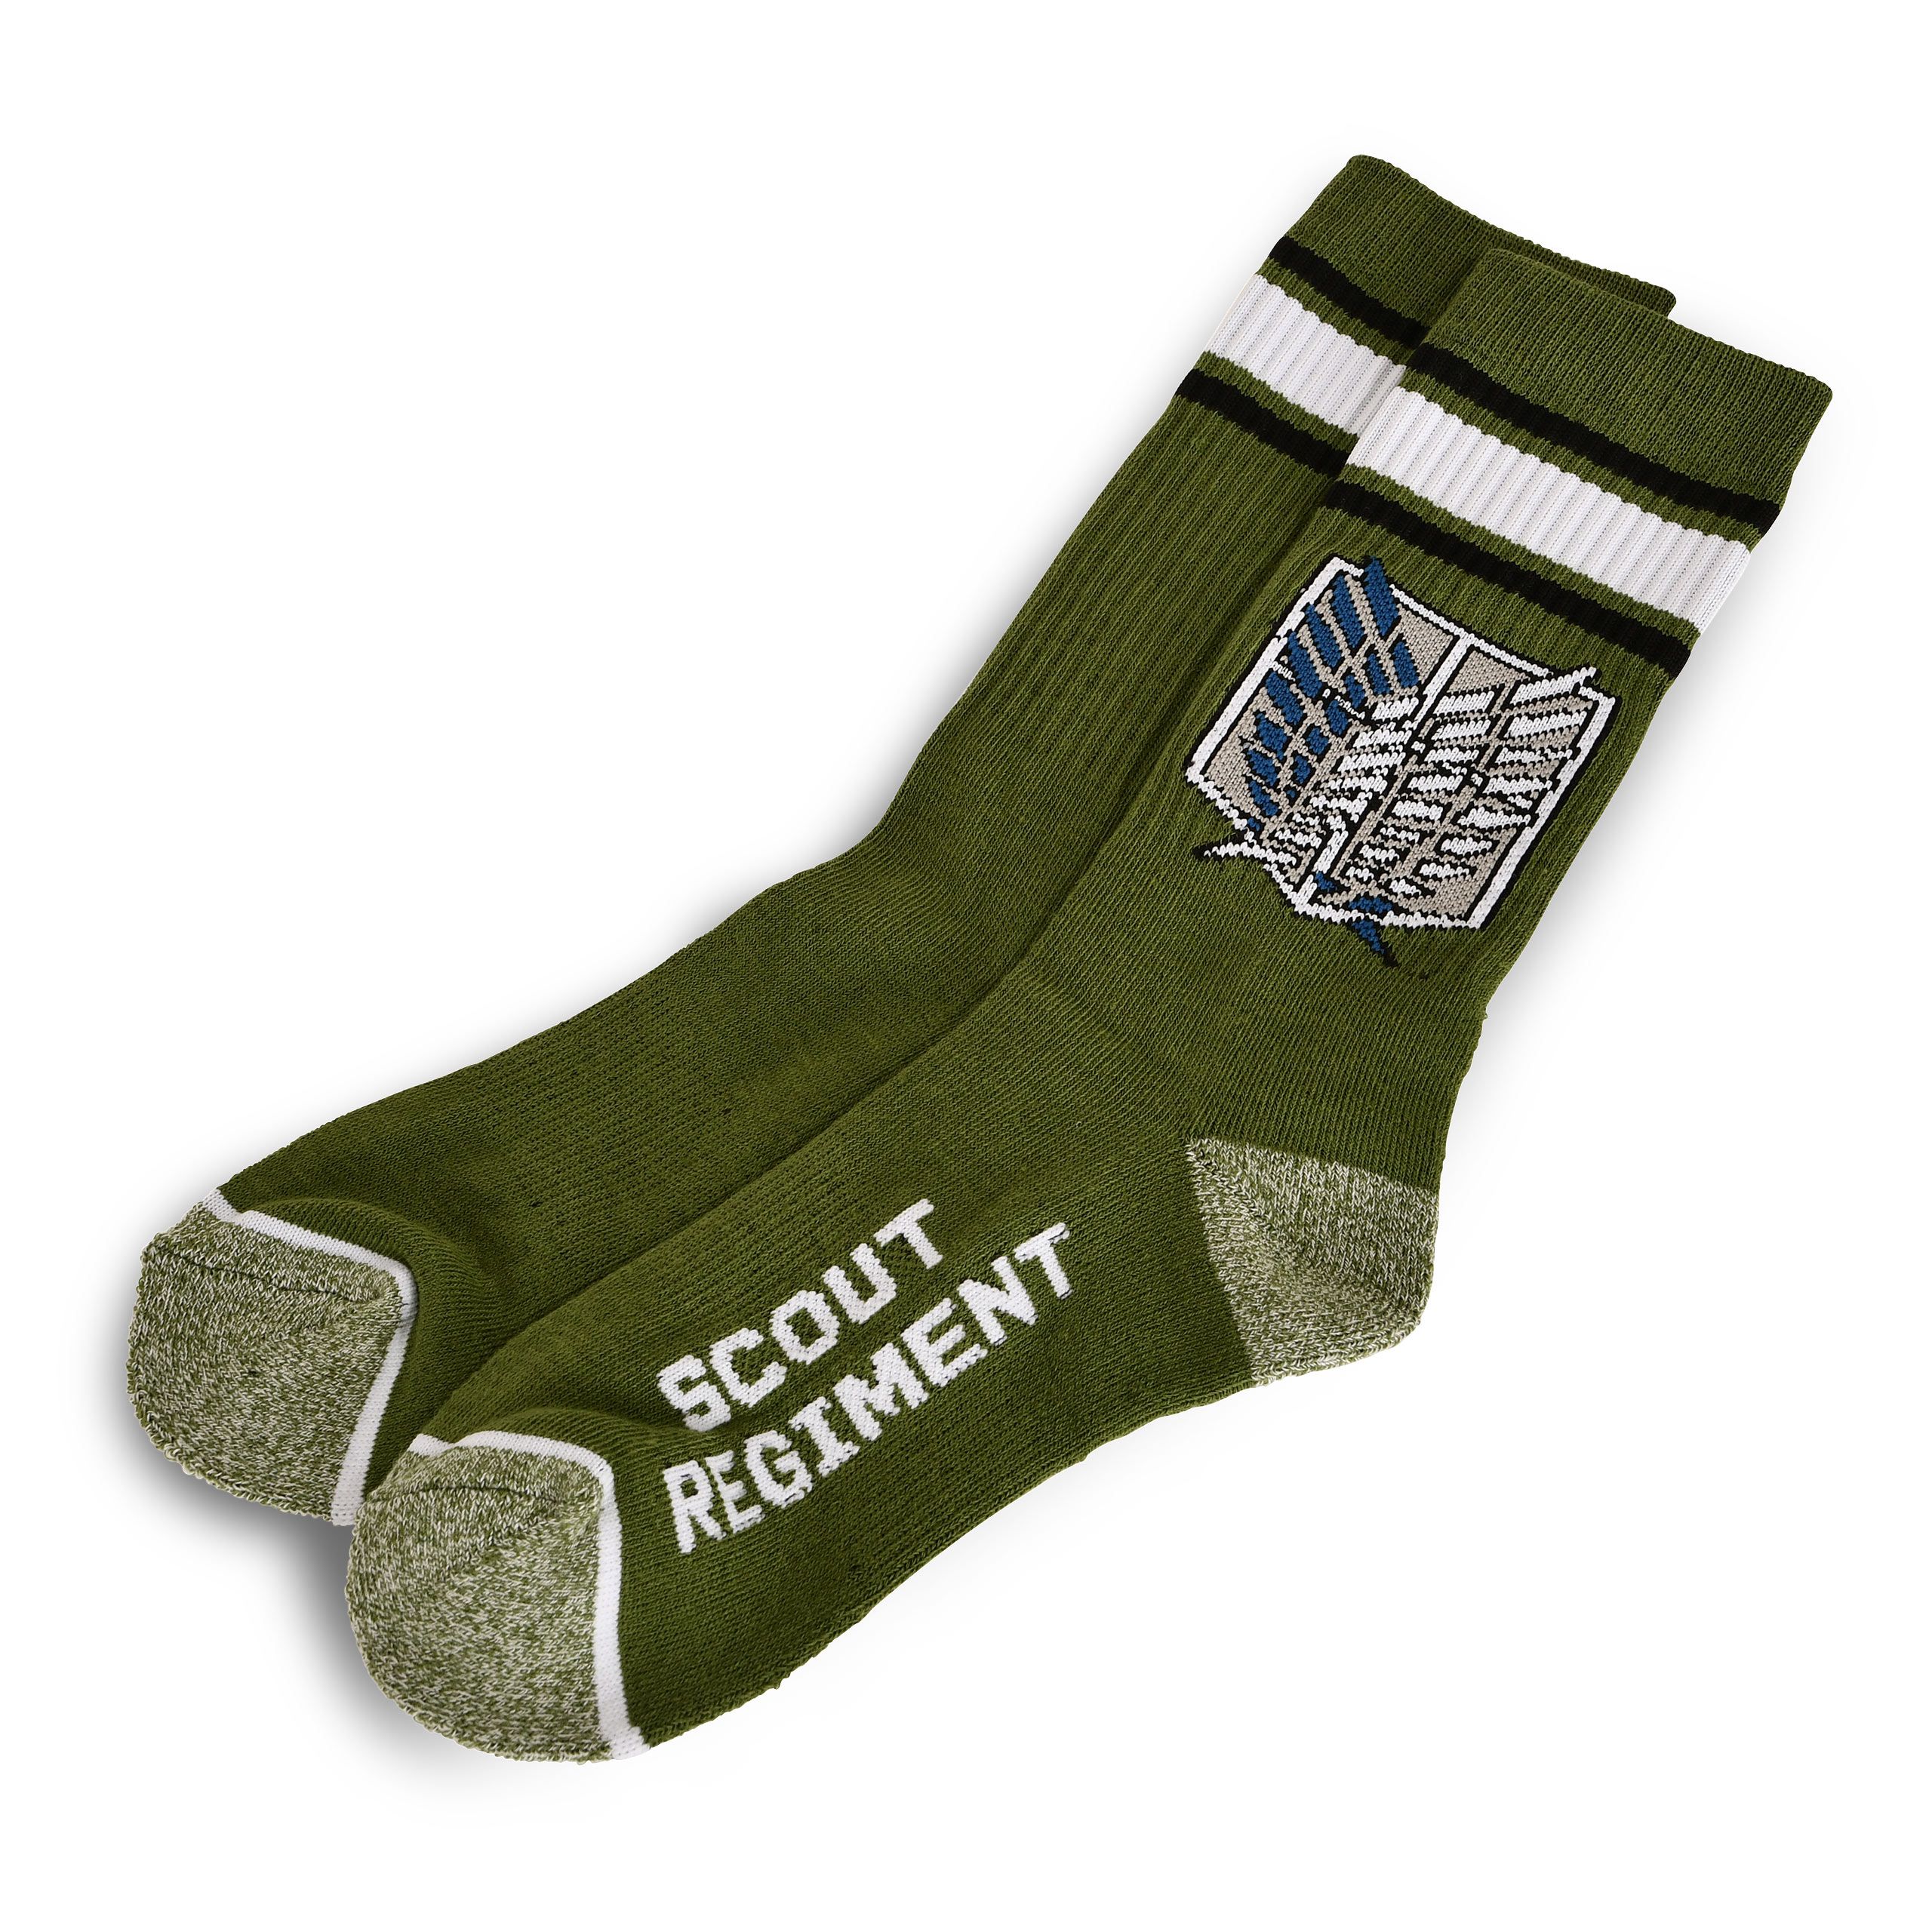 Attack on Titan - Scout Regiment Socken